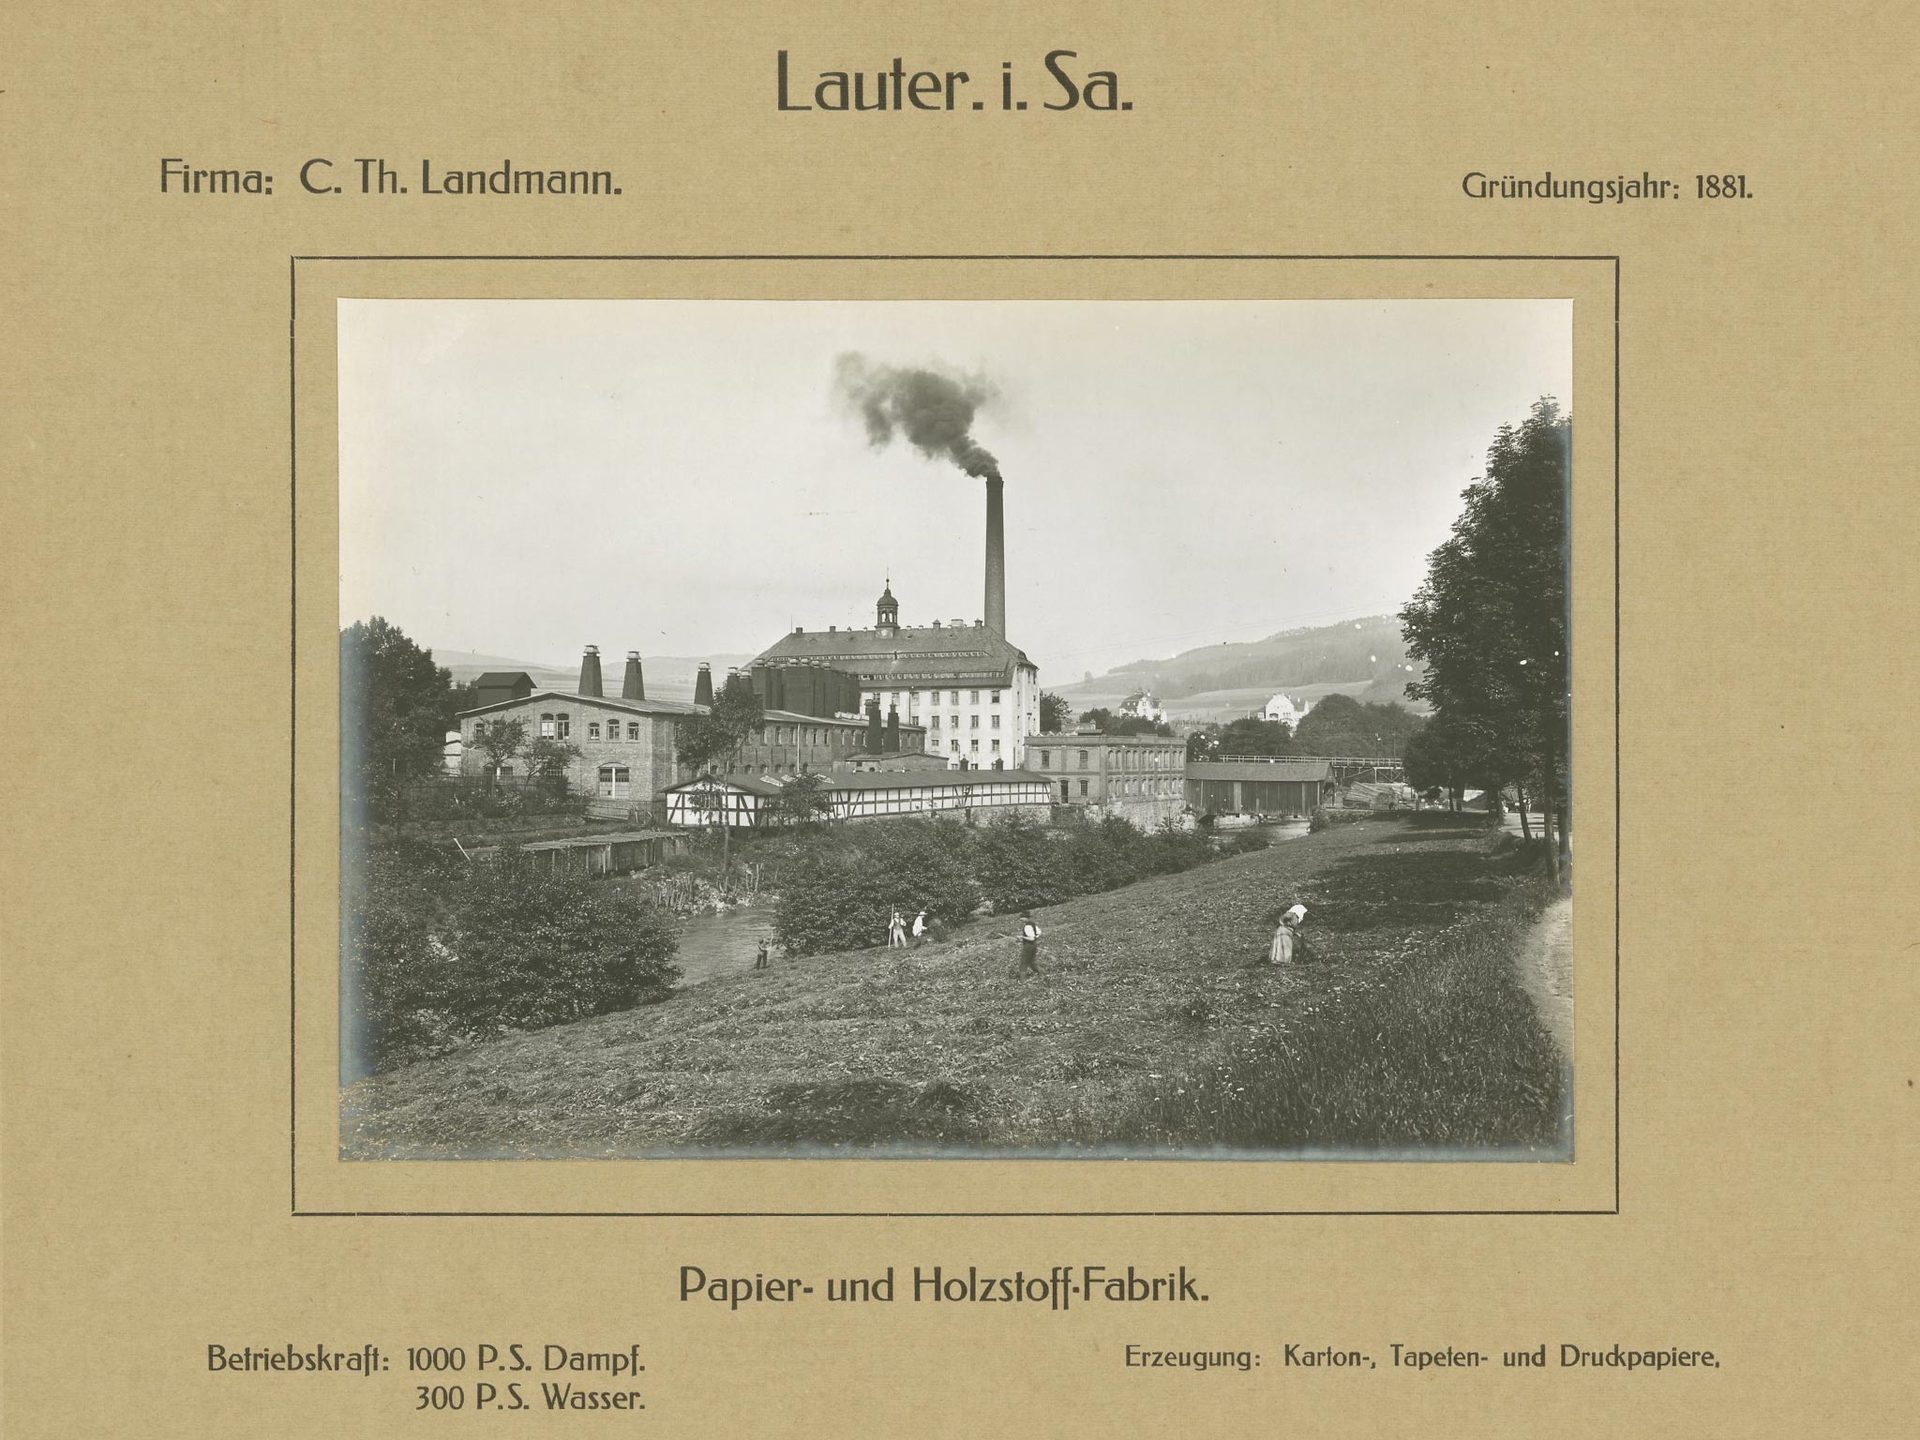 Papier- und Holzstoff-Fabrik C. Th. Landmann, Lauter i. Sa.